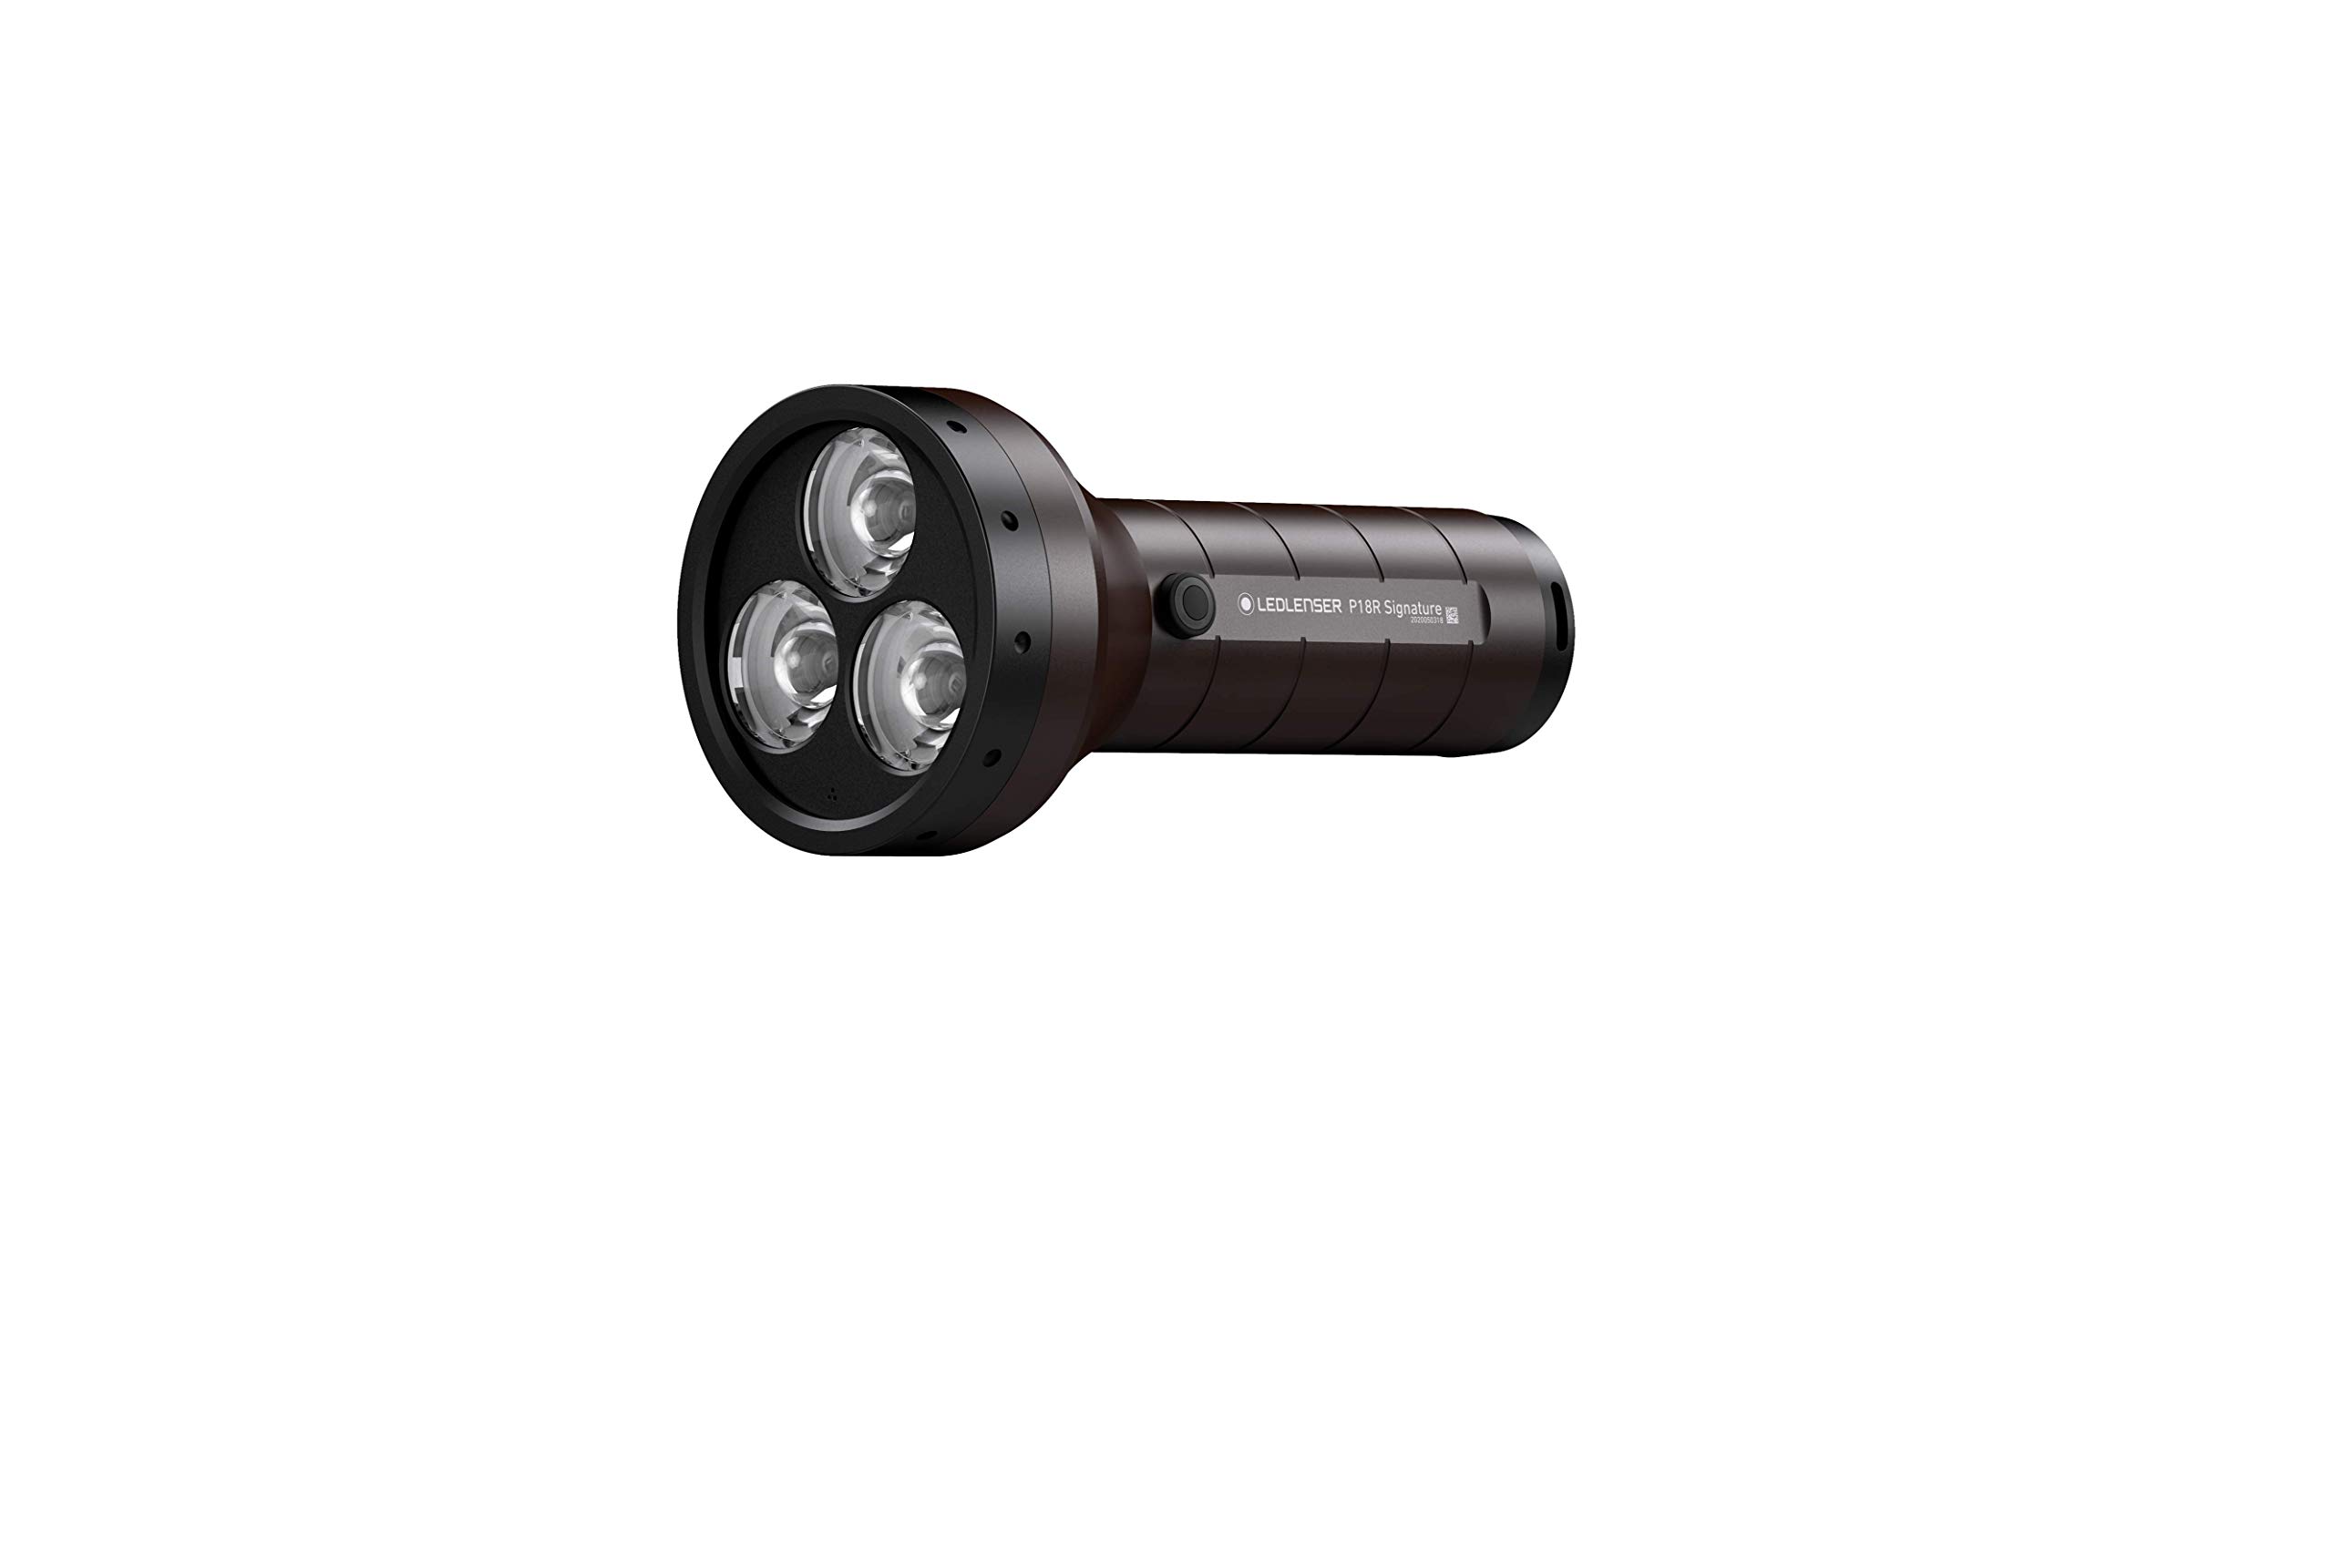 Ledlenser P18R Signature Premium Taschenlampe LED, Suchscheinwerfer, aufladbar mit Lithium Akku, 4500 Lumen, fokussierbar, X-Lens Technology, Leuchtweite 720 m, USB Magnetladekabel